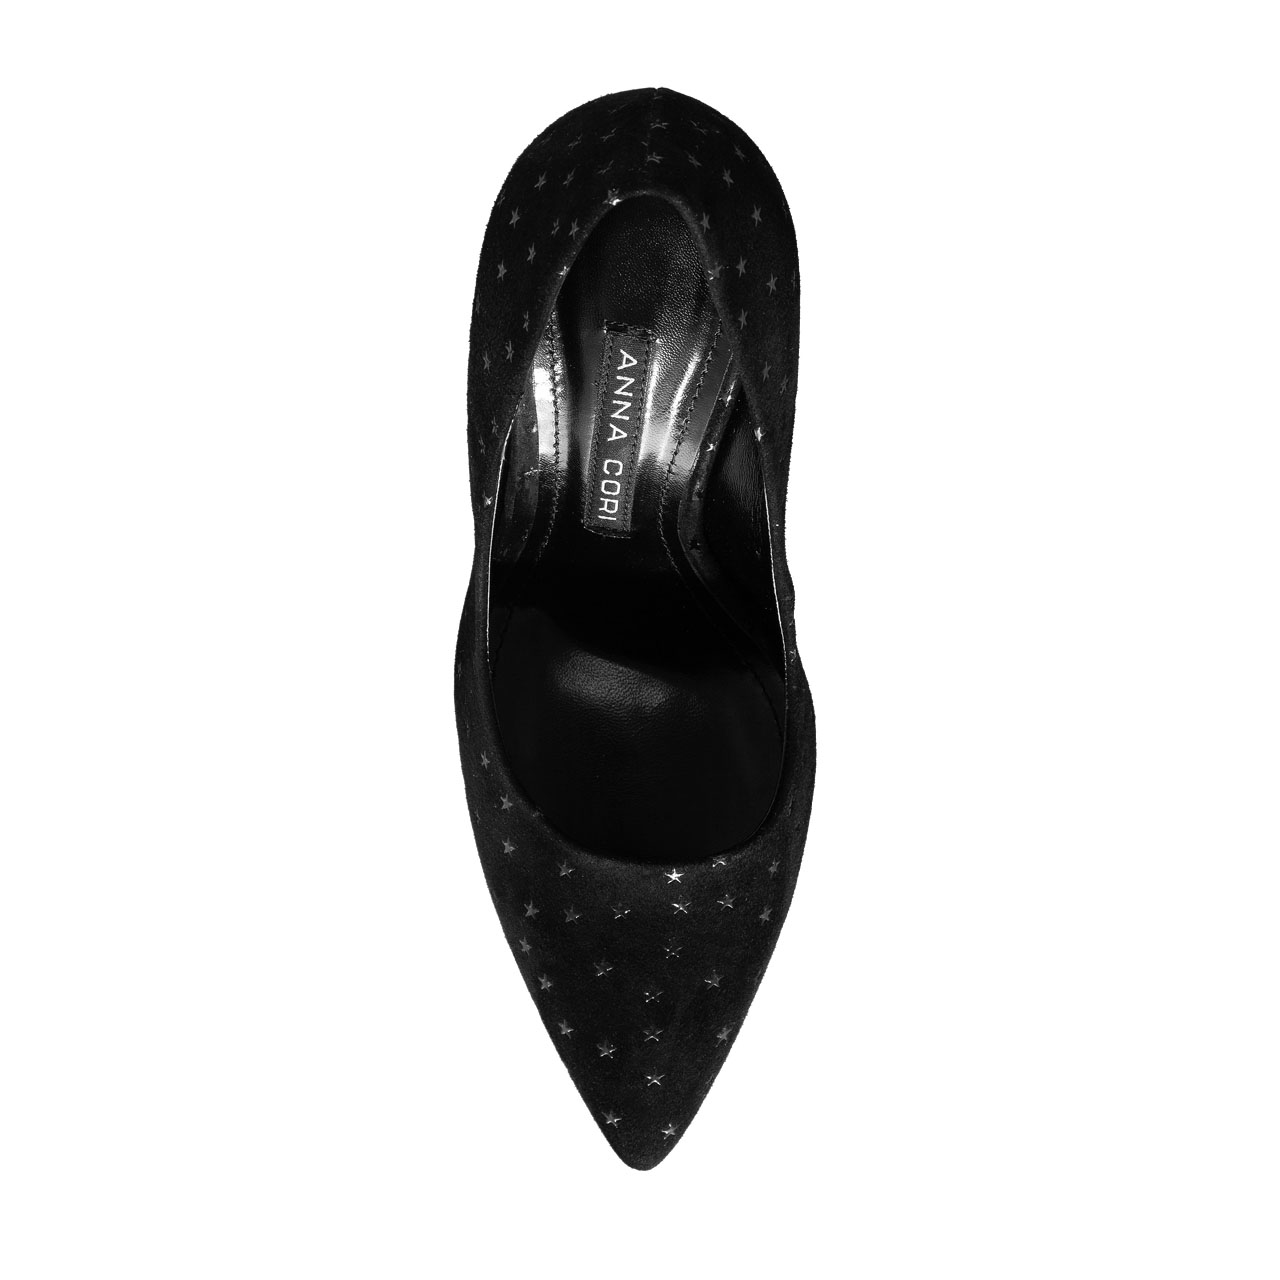 Imagine Pantofi Eleganti Dama 4332 Camoscio Negru/Stamp Stea